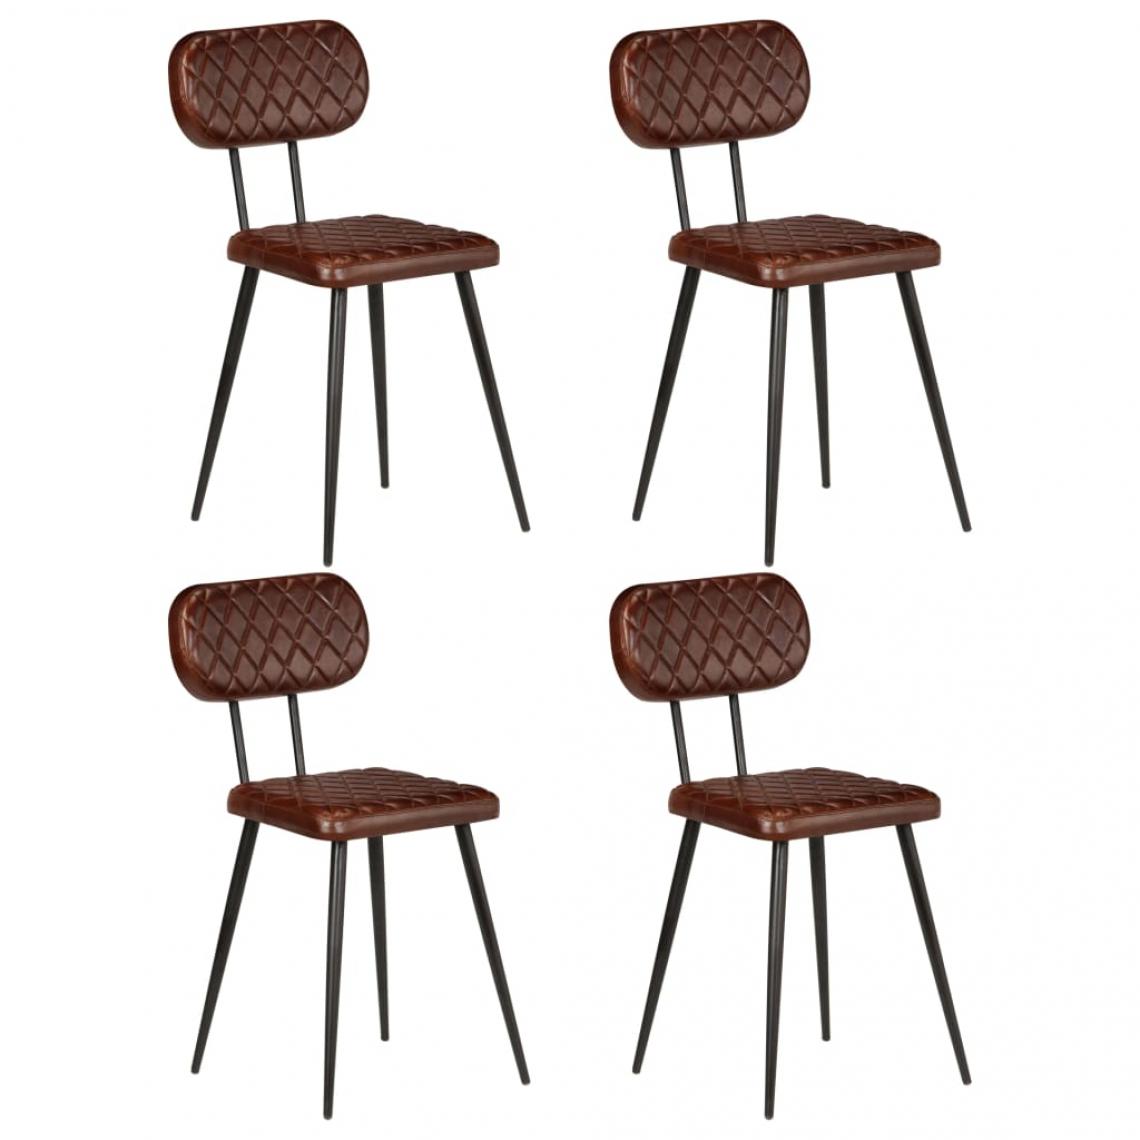 Decoshop26 - Lot de 4 chaises de salle à manger cuisine design vintage cuir véritable marron CDS021678 - Chaises